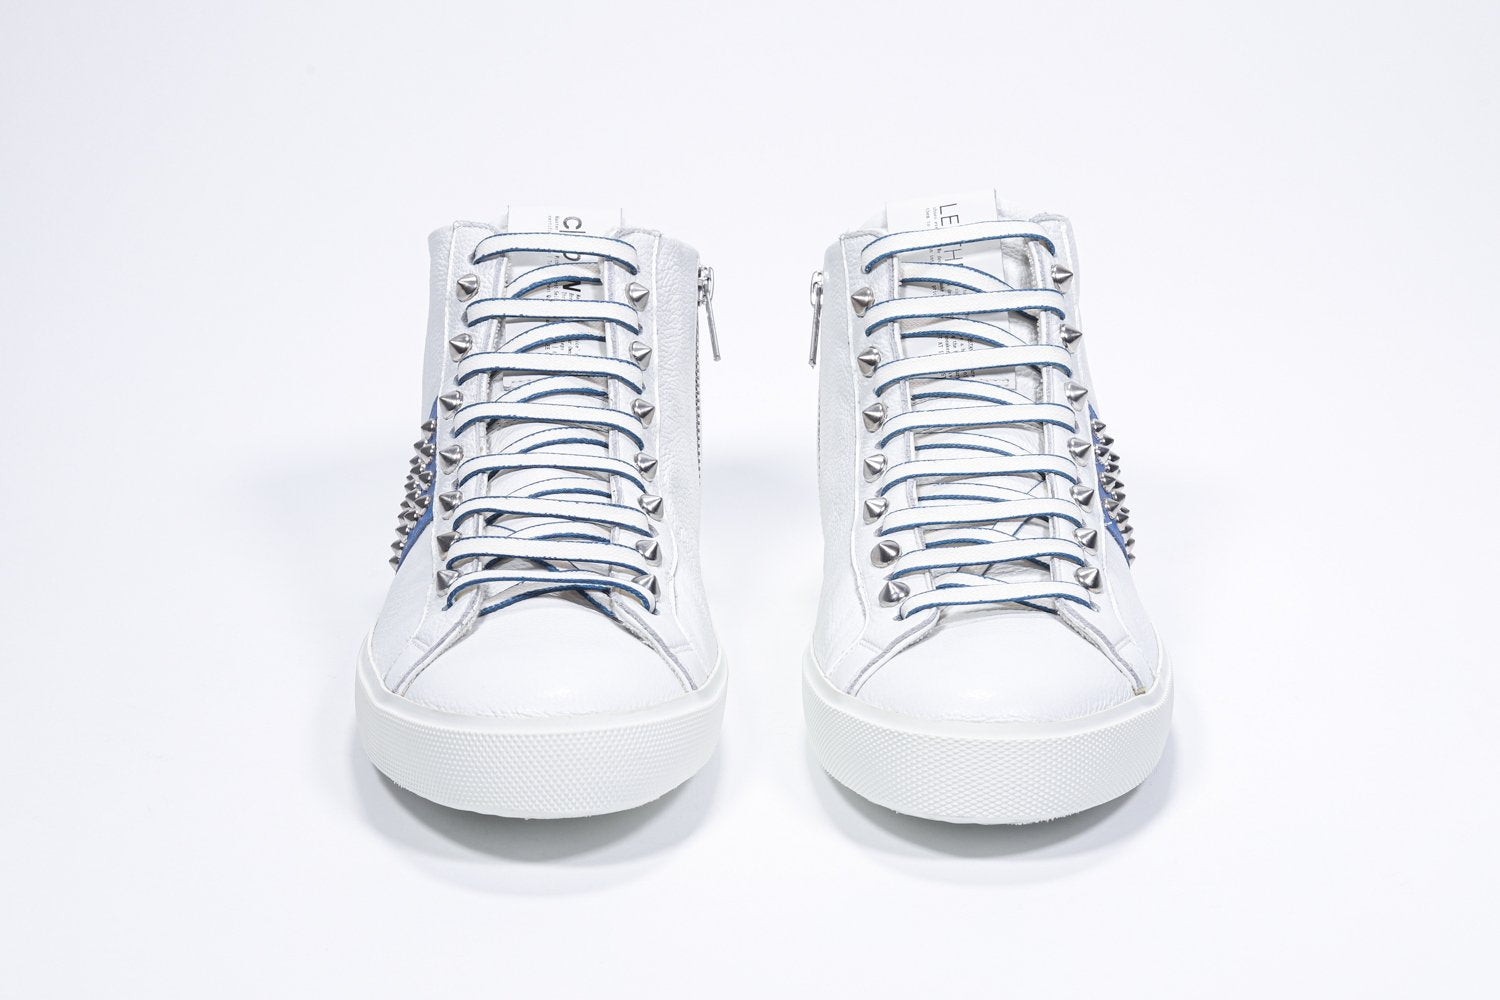 Vista frontale della mid top bianca e blu reale sneaker. Tomaia in pelle con borchie, zip interna e suola in gomma bianca.